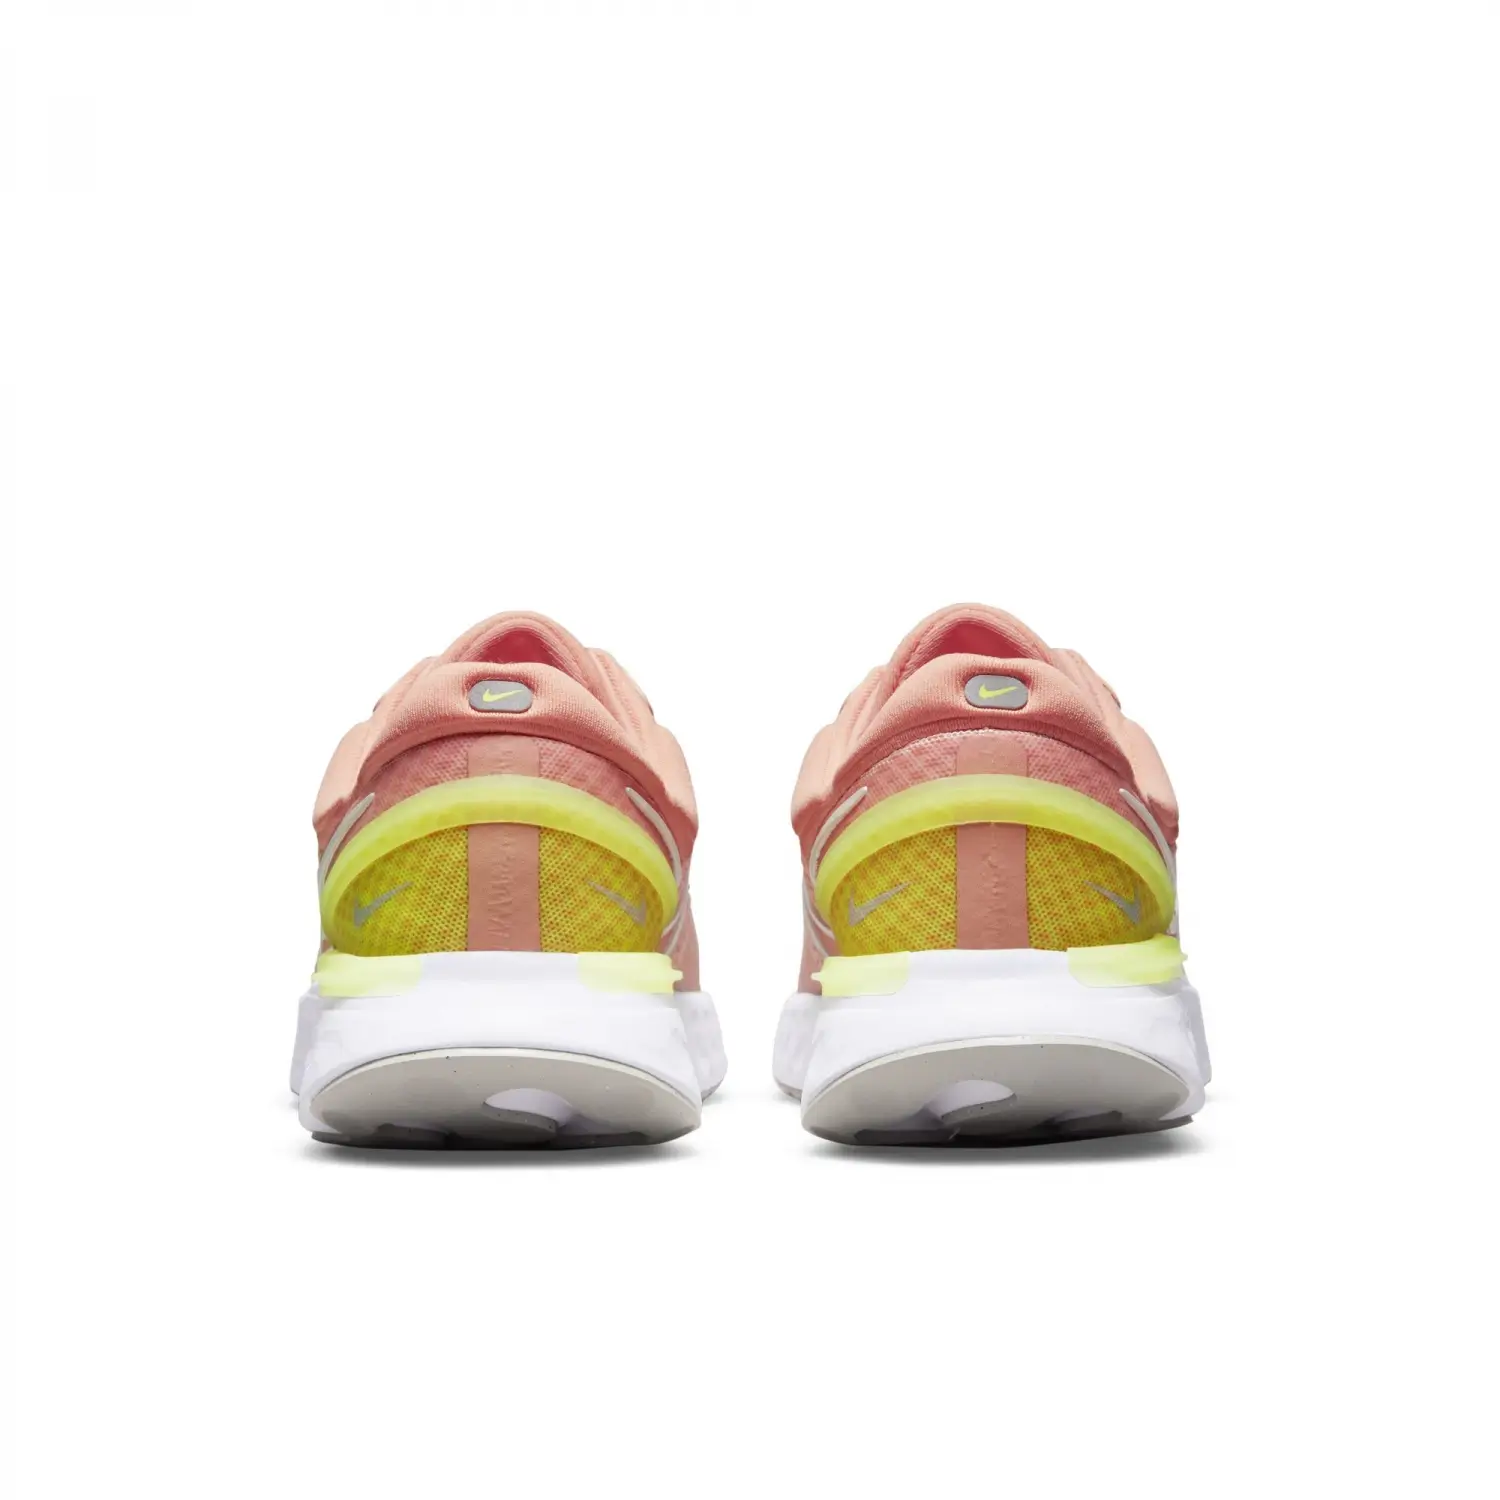 Nike React Miler 3 Pembe Kadın Koşu Ayakkabısı -DD0491-800